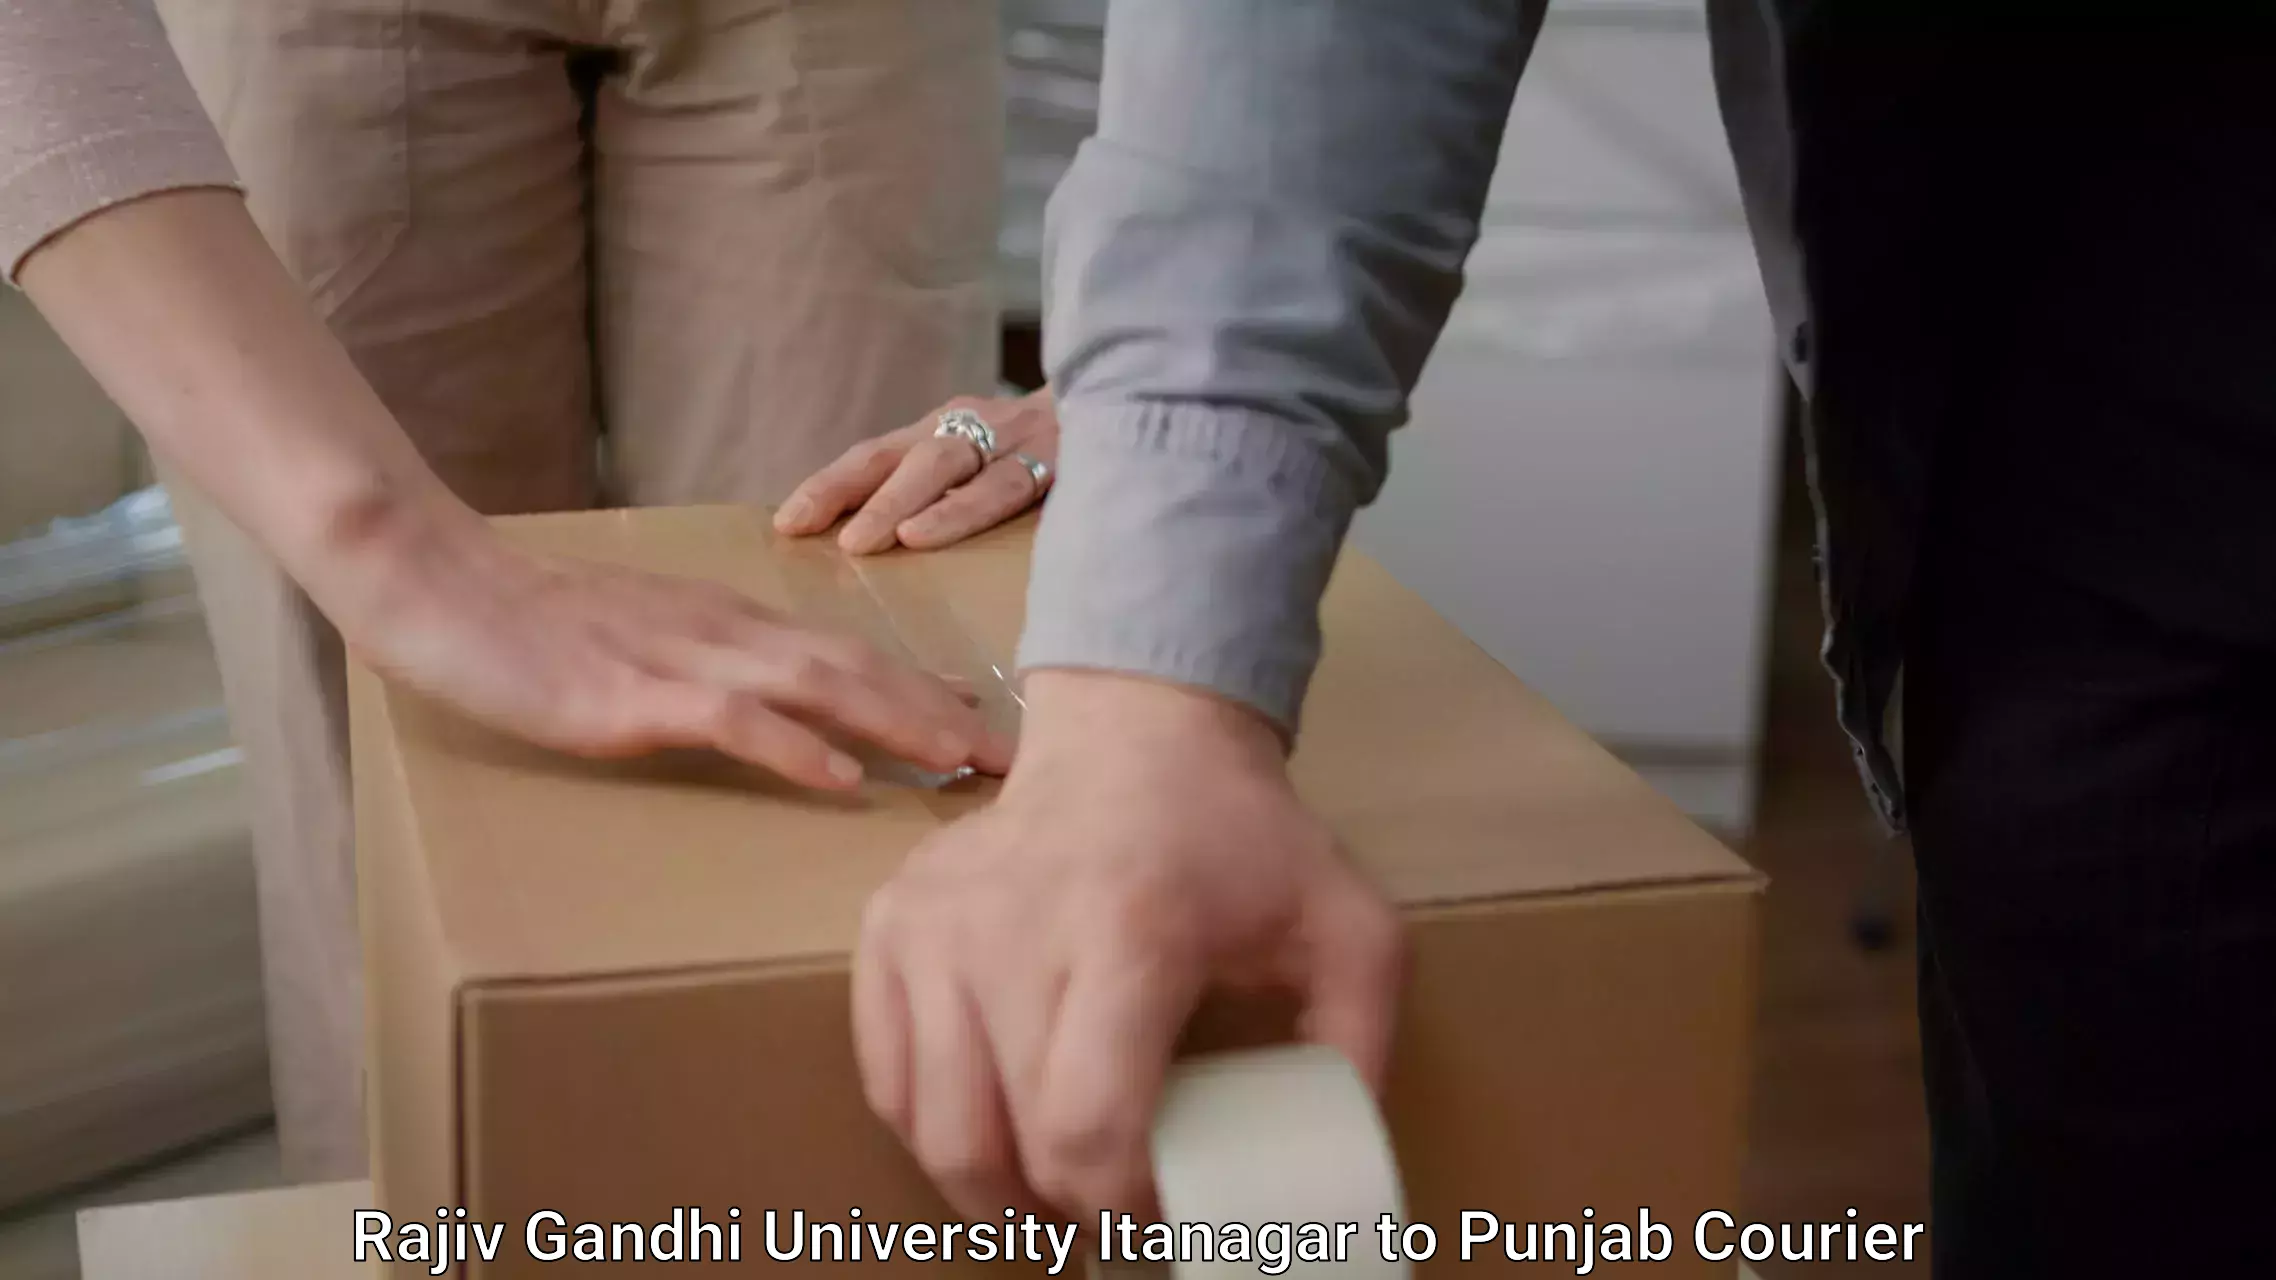 Furniture transport solutions Rajiv Gandhi University Itanagar to Punjab